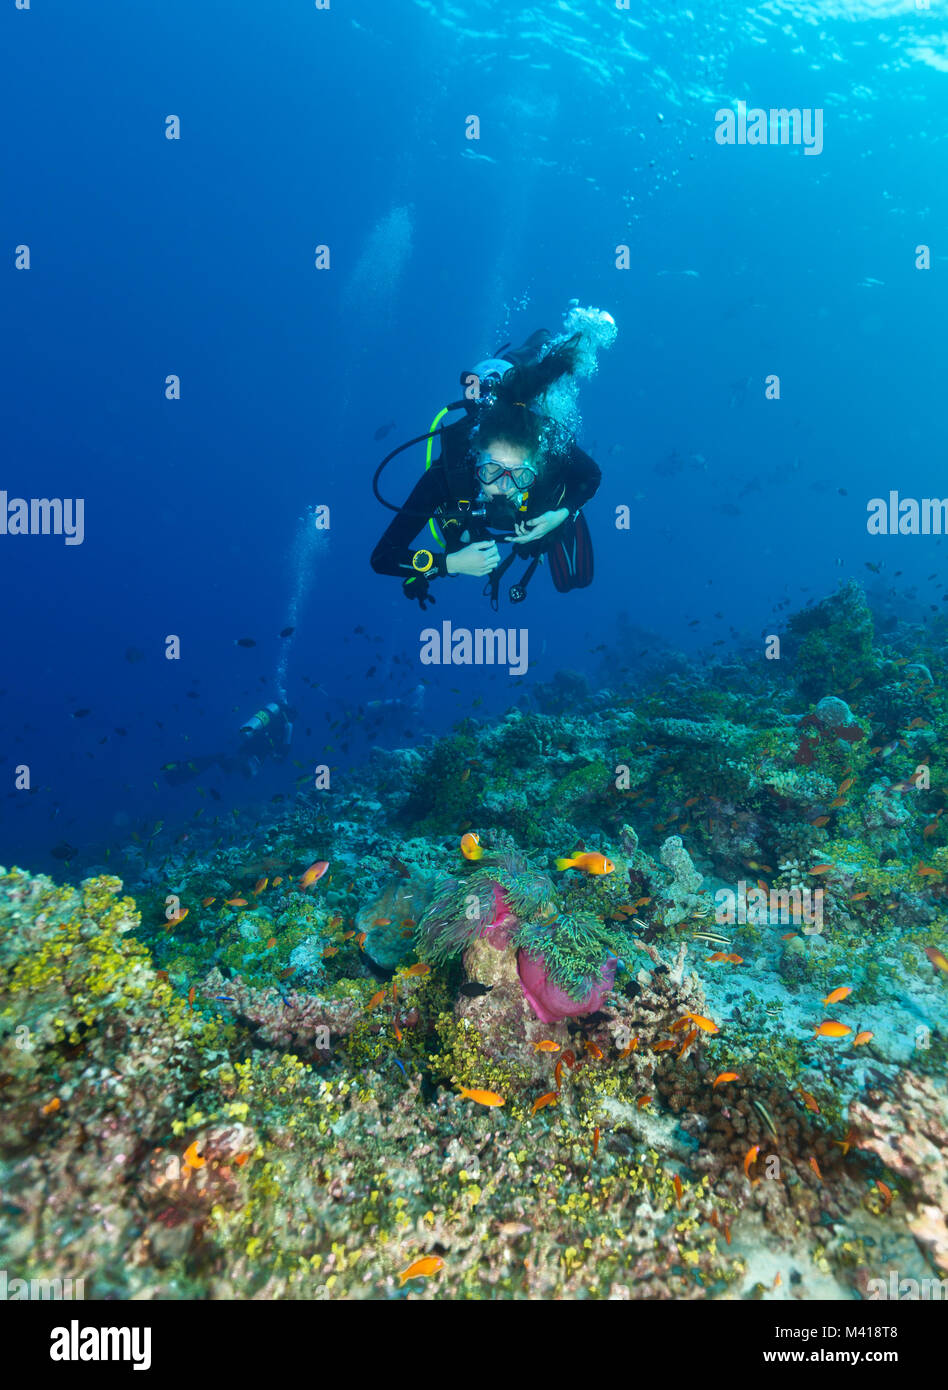 Junge Frau Scuba diver Erkundung Coral Reef, Unterwasser Aktivitäten Stockfoto